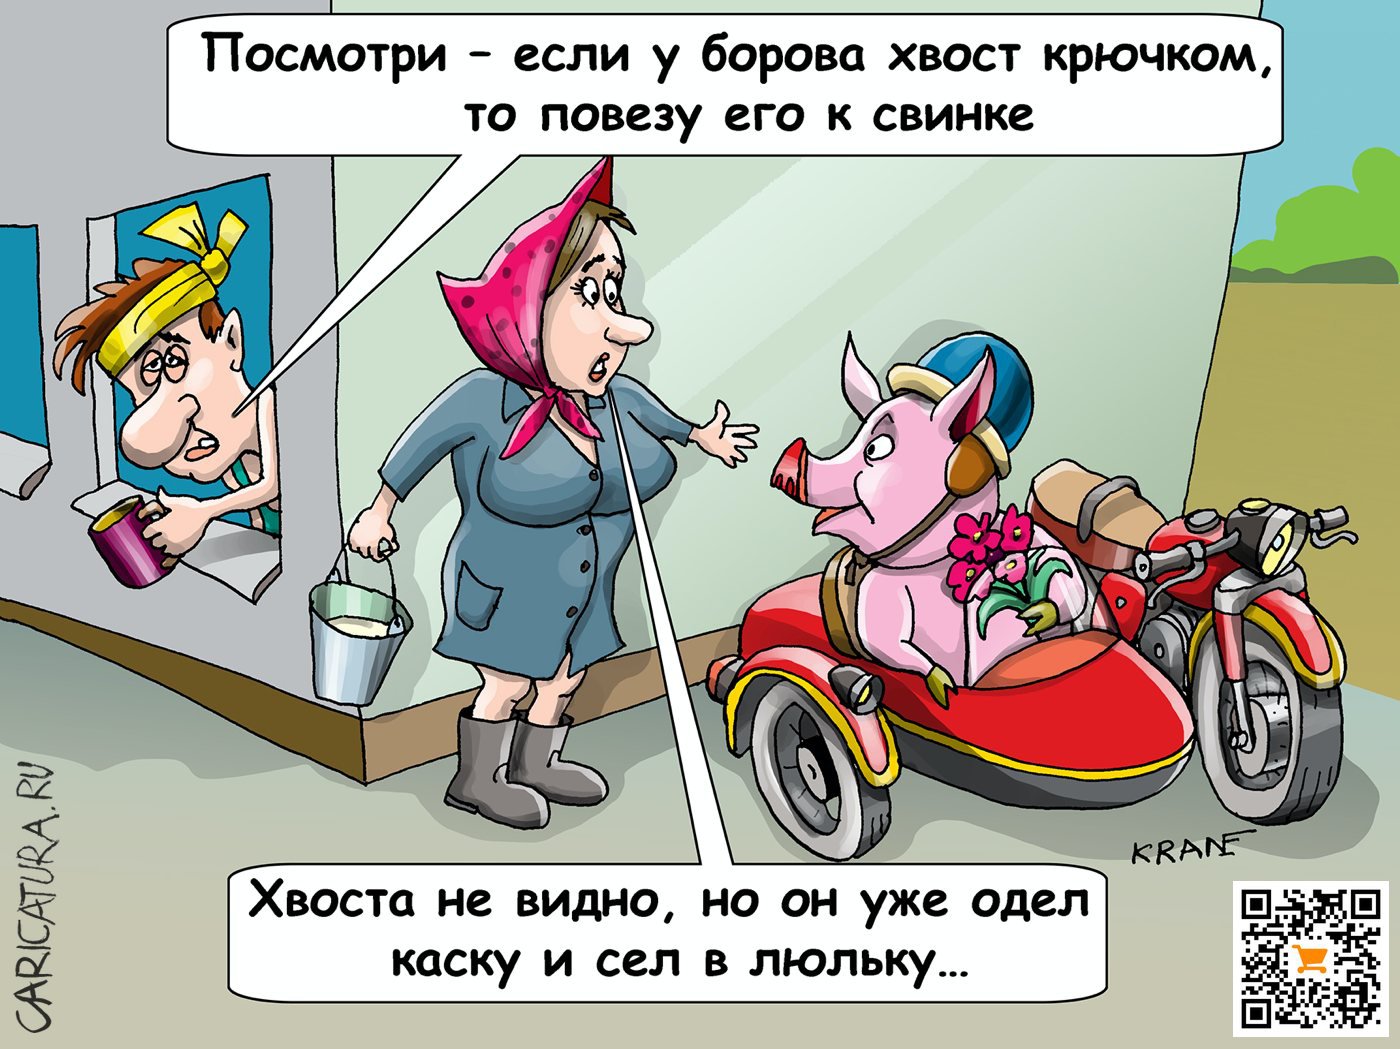 Карикатура "Боров едет на свидание к свинке", Евгений Кран